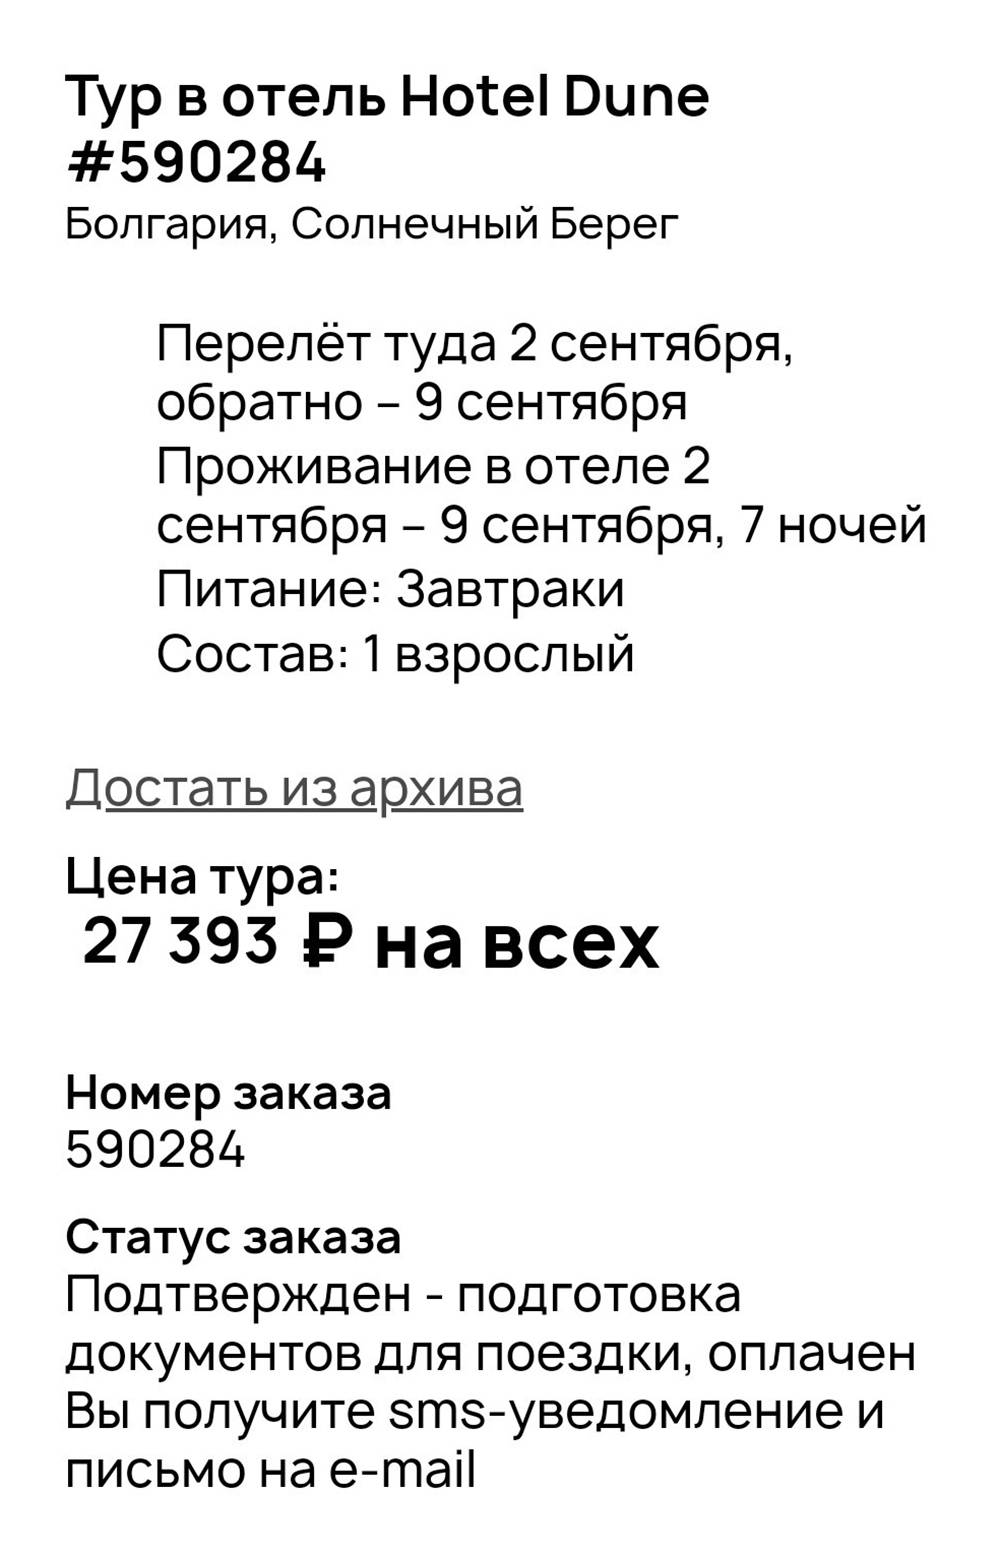 Туроператор подтвердил тур в отель на Солнечном Берегу. Это&nbsp;скриншот из моего личного кабинета, где до сих пор хранятся данные о заявке. Источник:&nbsp;onlinetours.ru